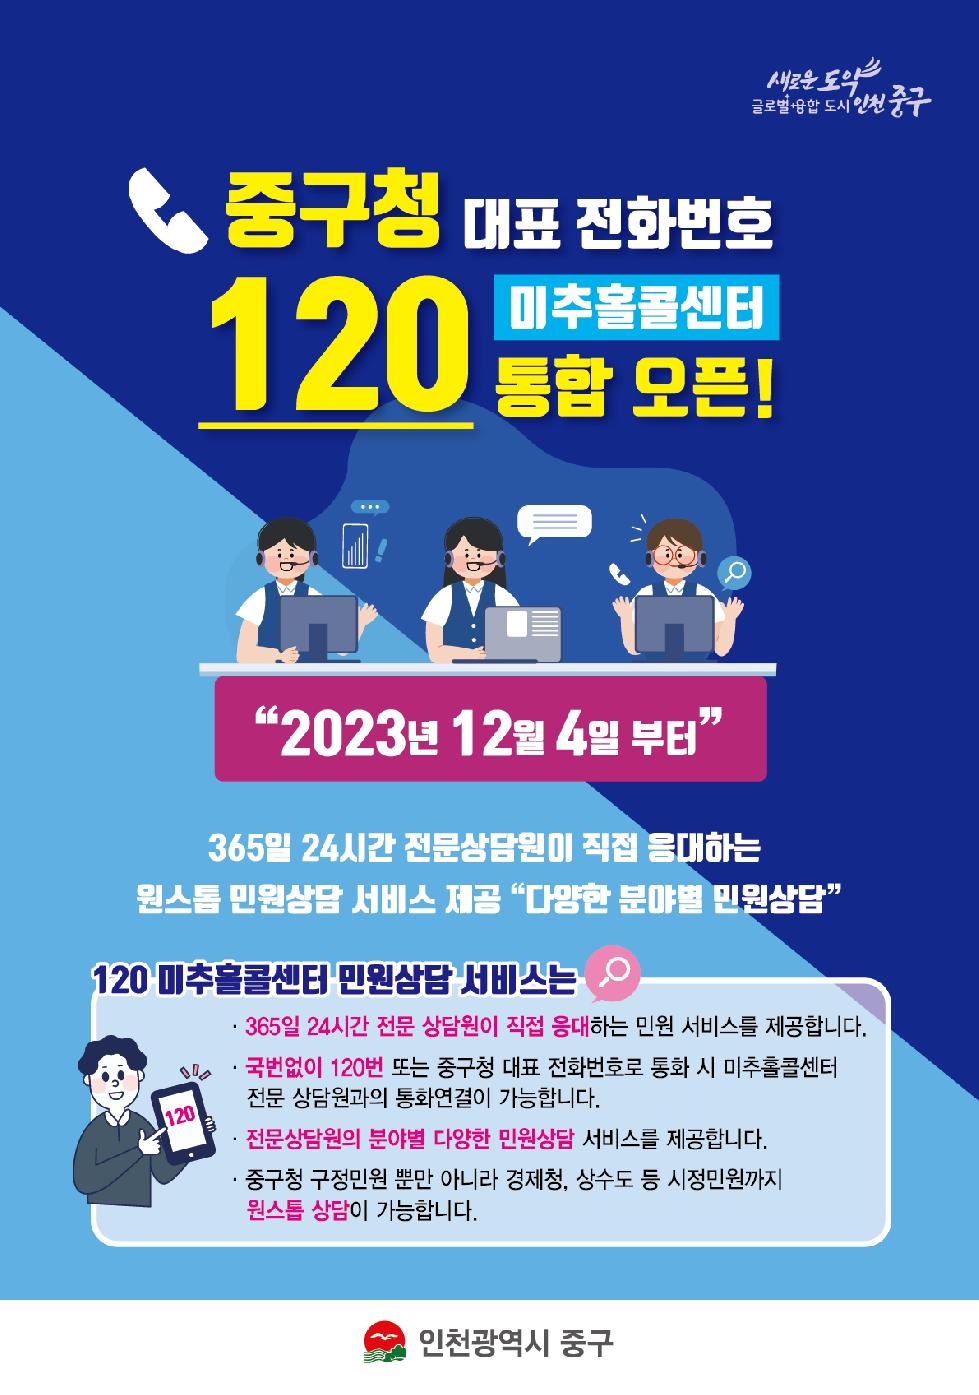 인천 중구 대표전화-120미추홀콜센터 통합 ‘원스톱 상담 서비스 실현’